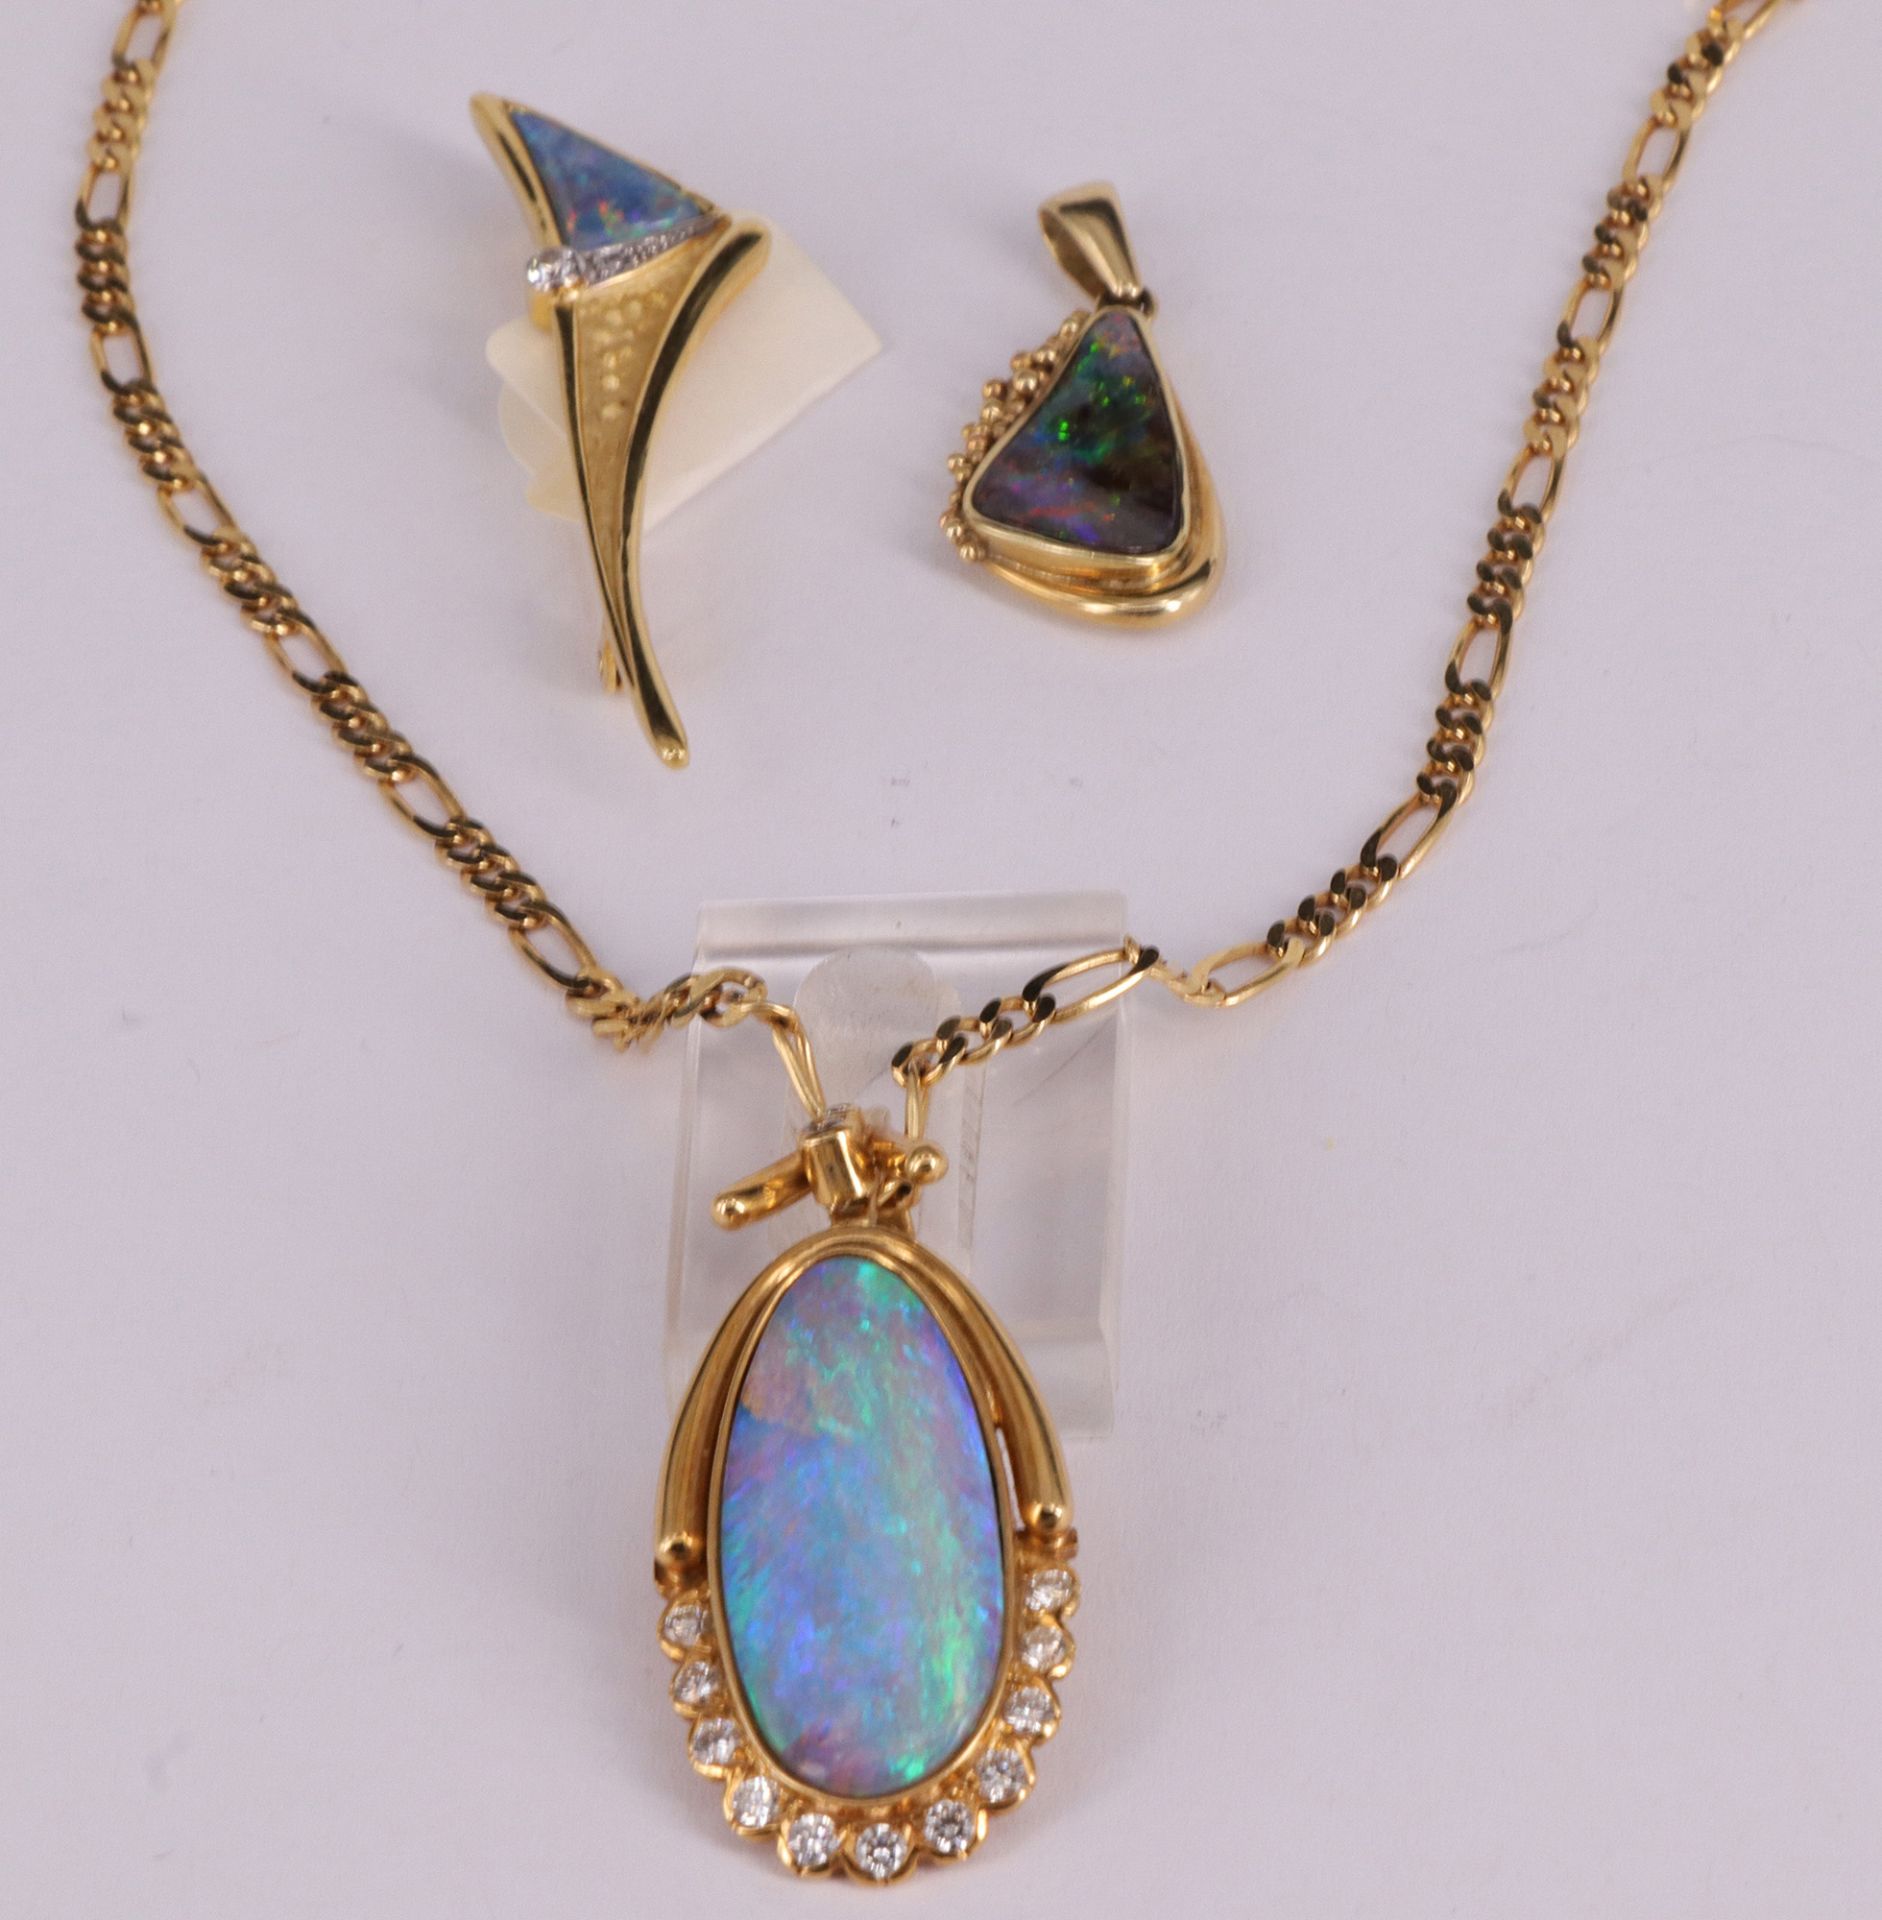 3 Opal Schmuckstücke, bestehend aus: Opalanhänger, 750er GG, australischer Opal sowie 13 Brillanten, - Image 3 of 3